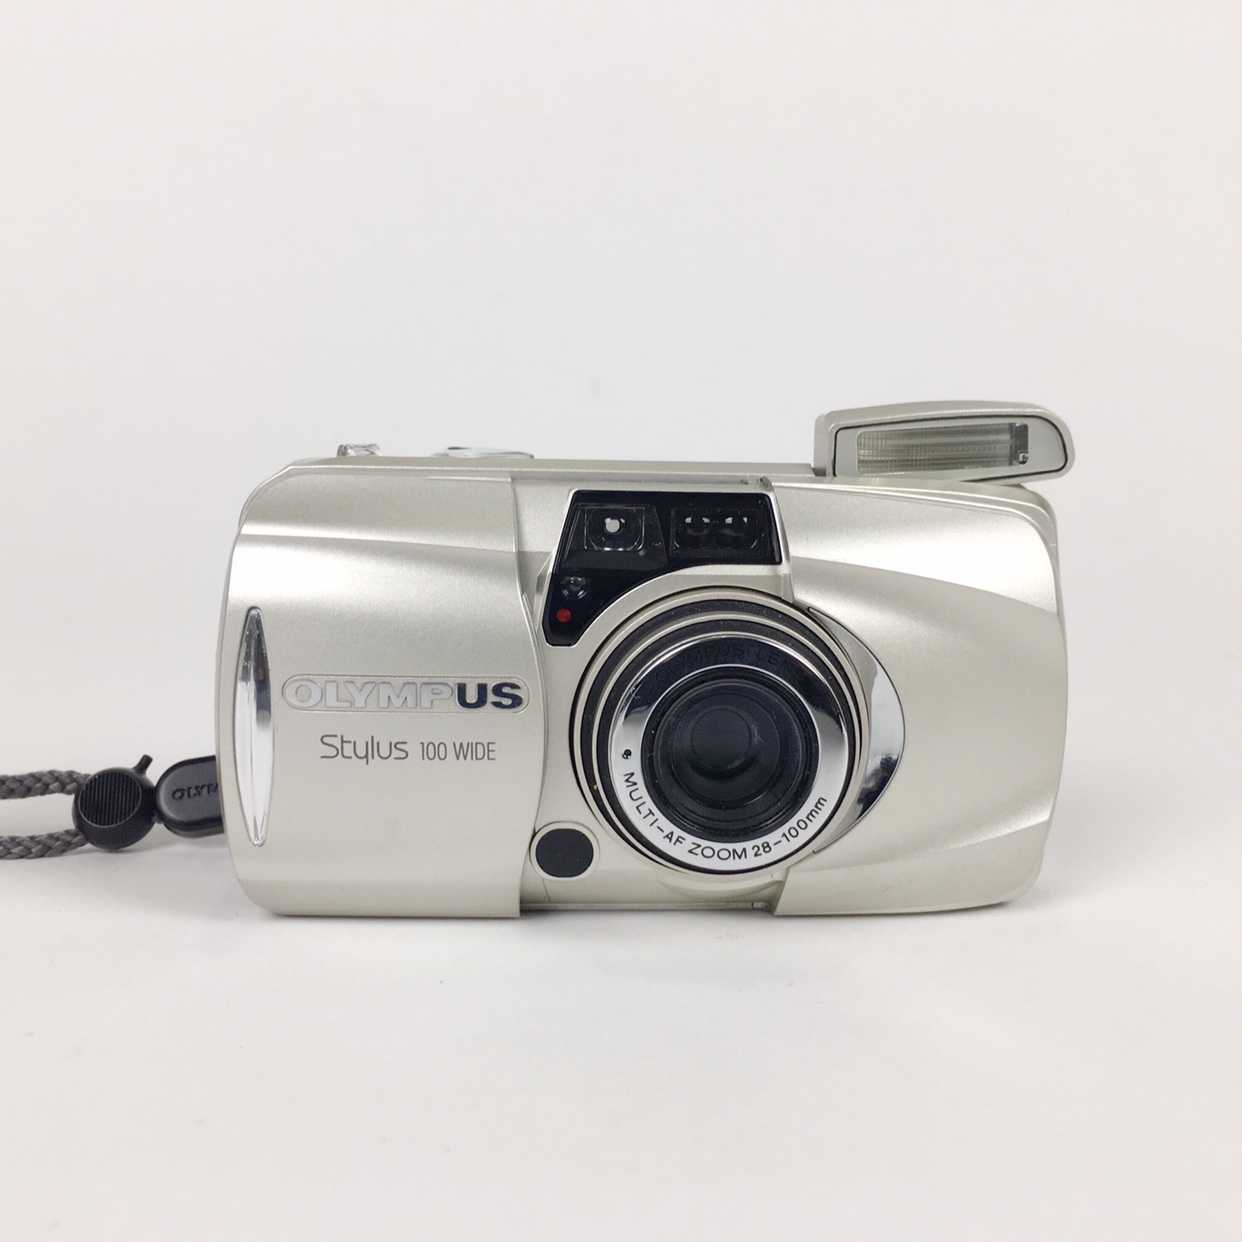 Компактный фотоаппарат olympus stylus 1 - купить | цены | обзоры и тесты | отзывы | параметры и характеристики | инструкция